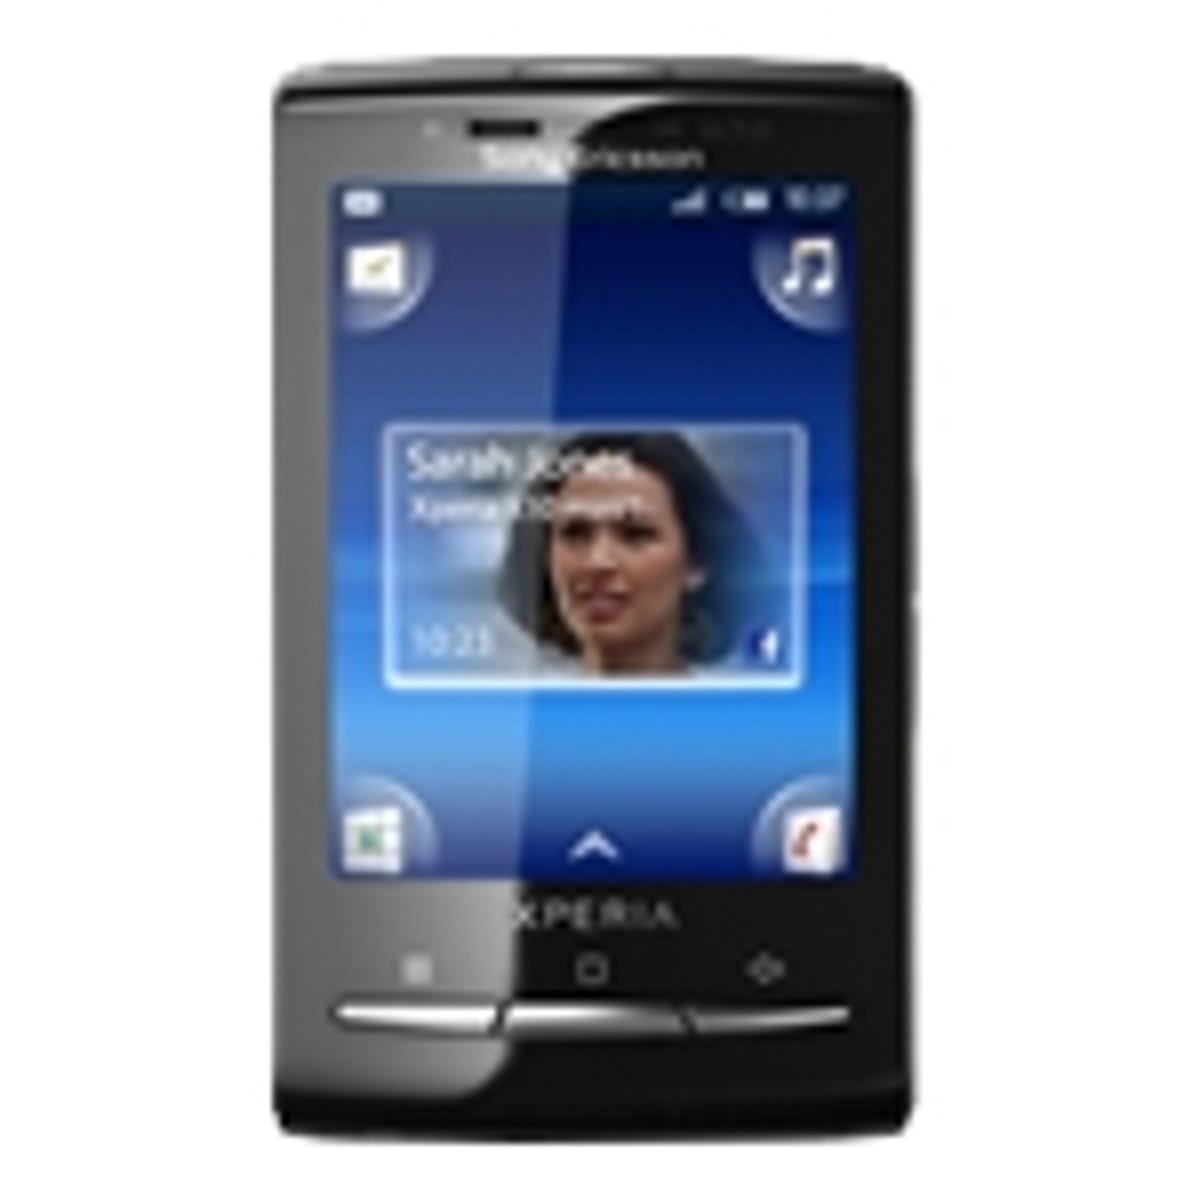 شبه استوائي القواعد الارشادية عربه قطار  Sony Ericsson Xperia X10 Mini review: Sony Ericsson Xperia X10 Mini - CNET